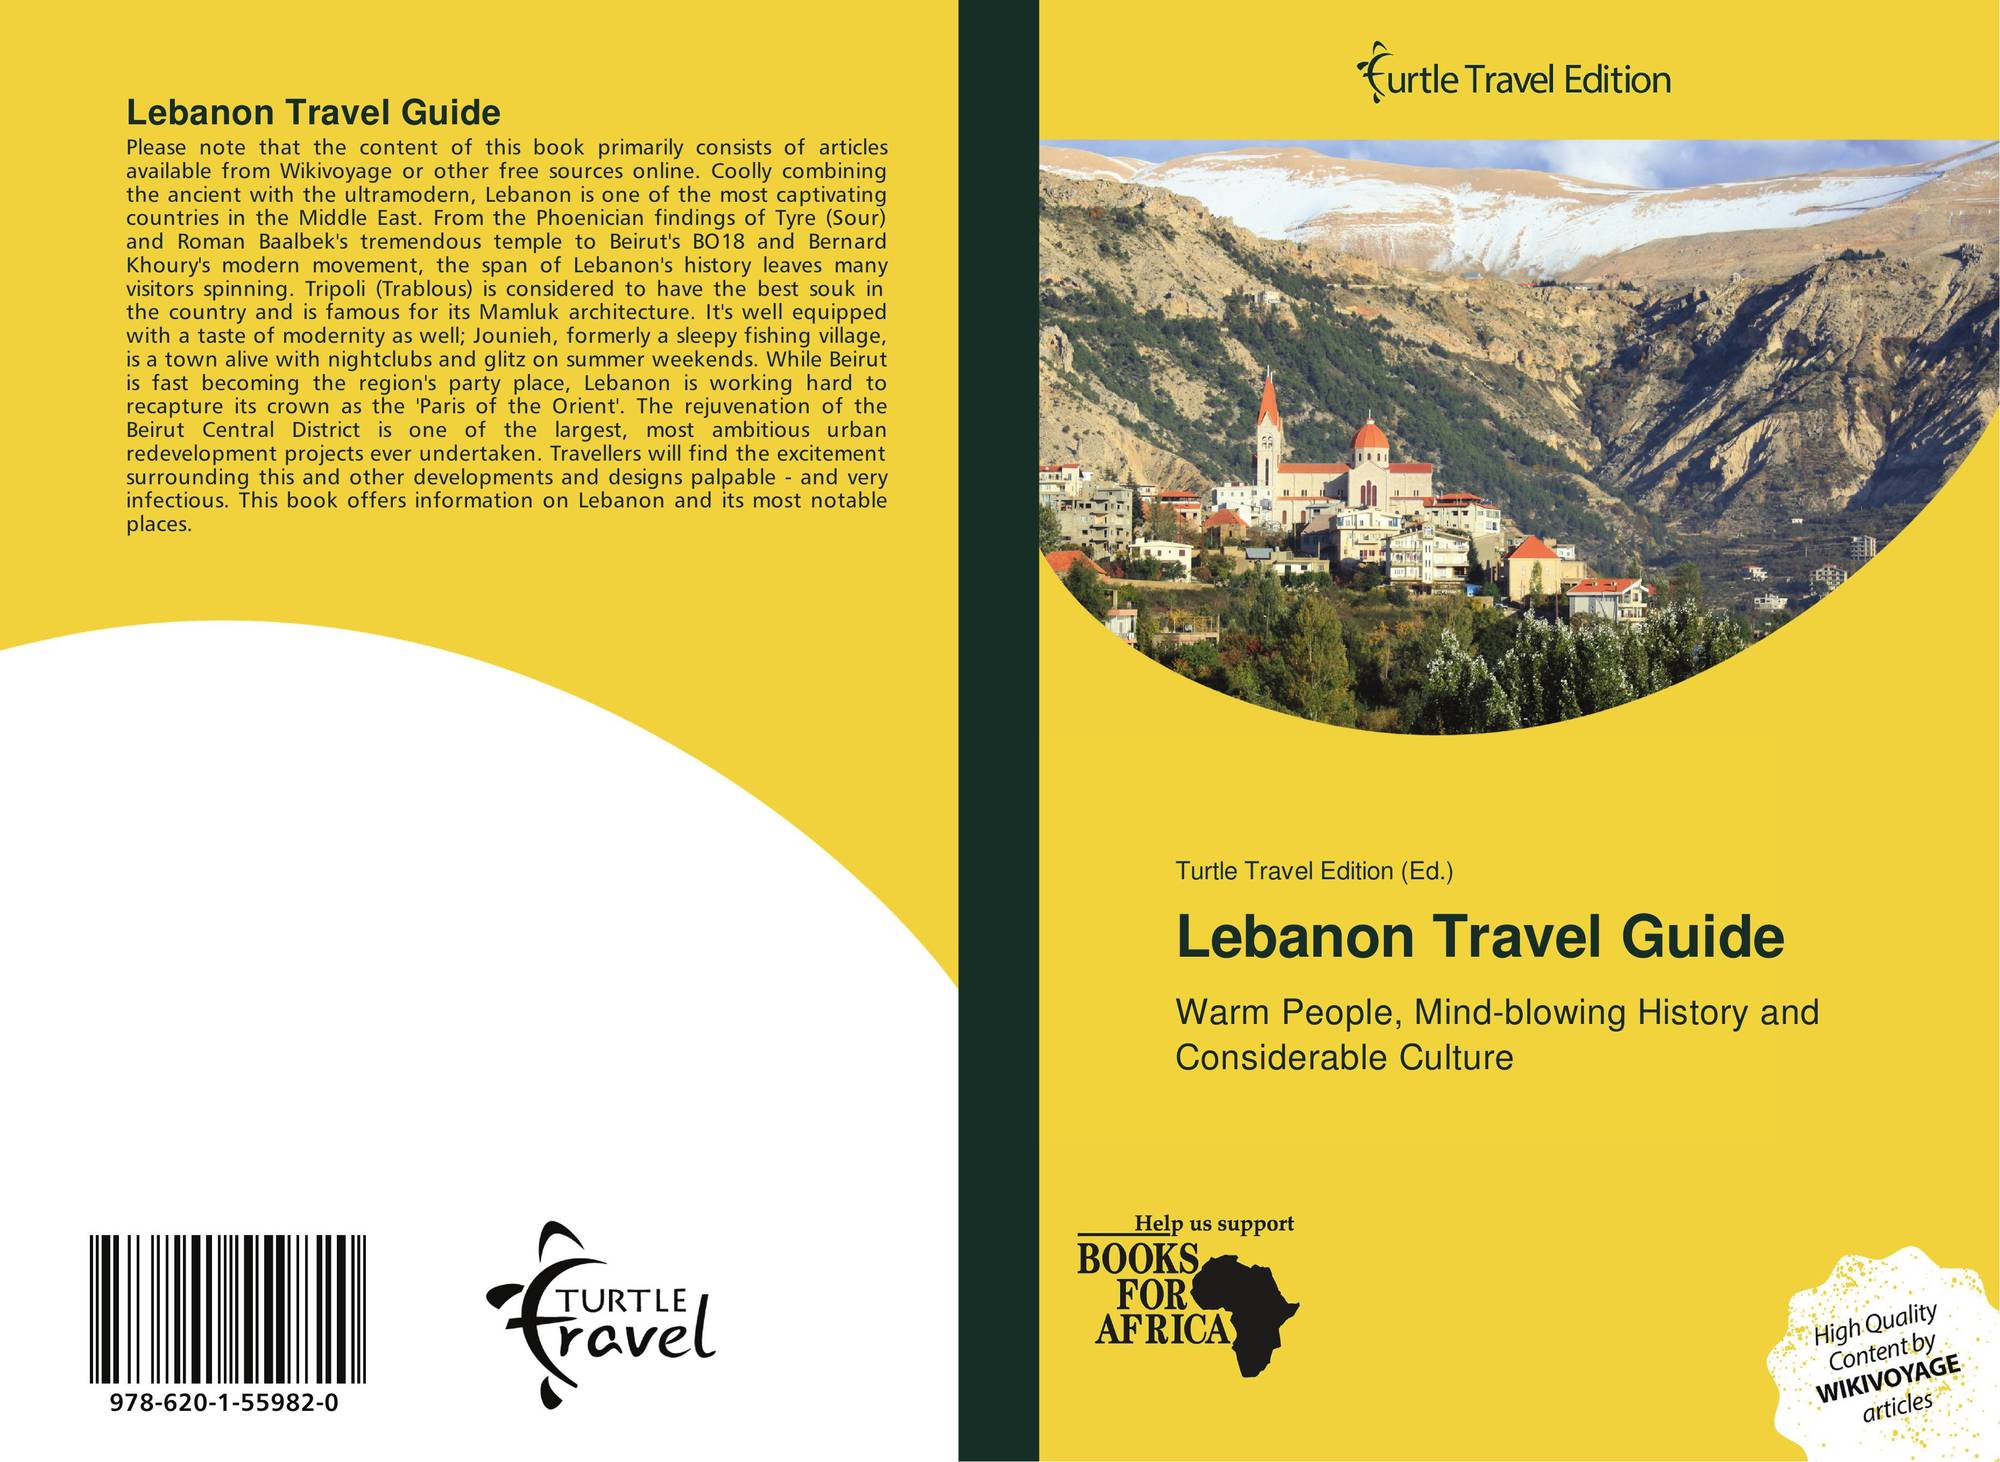 travel books on lebanon